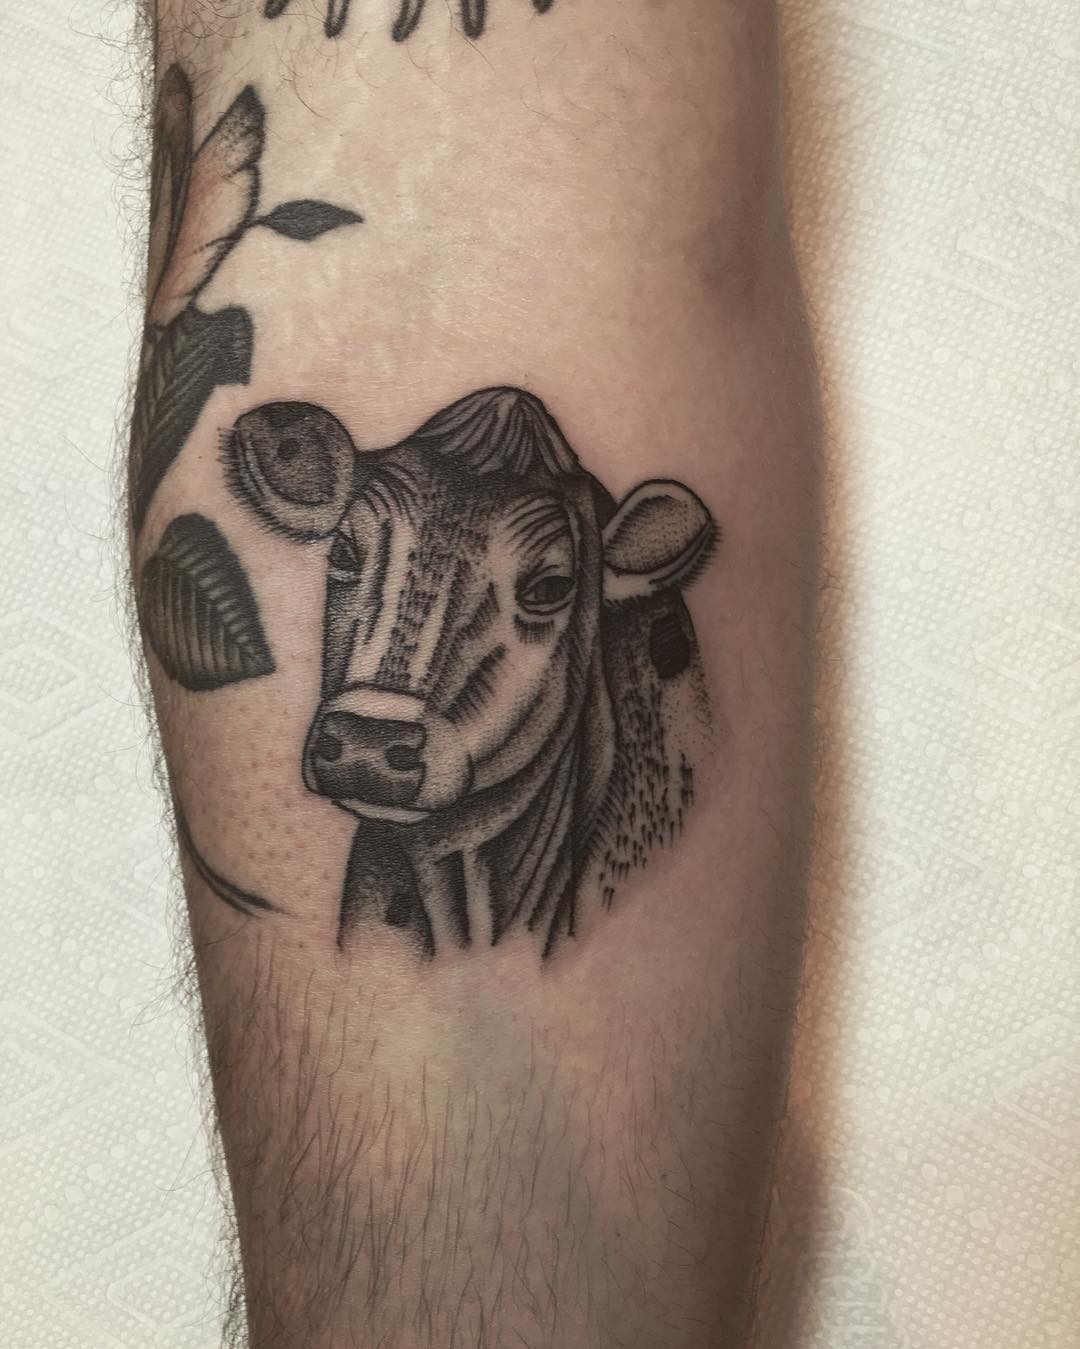 Cow by @justinoliviertattoo